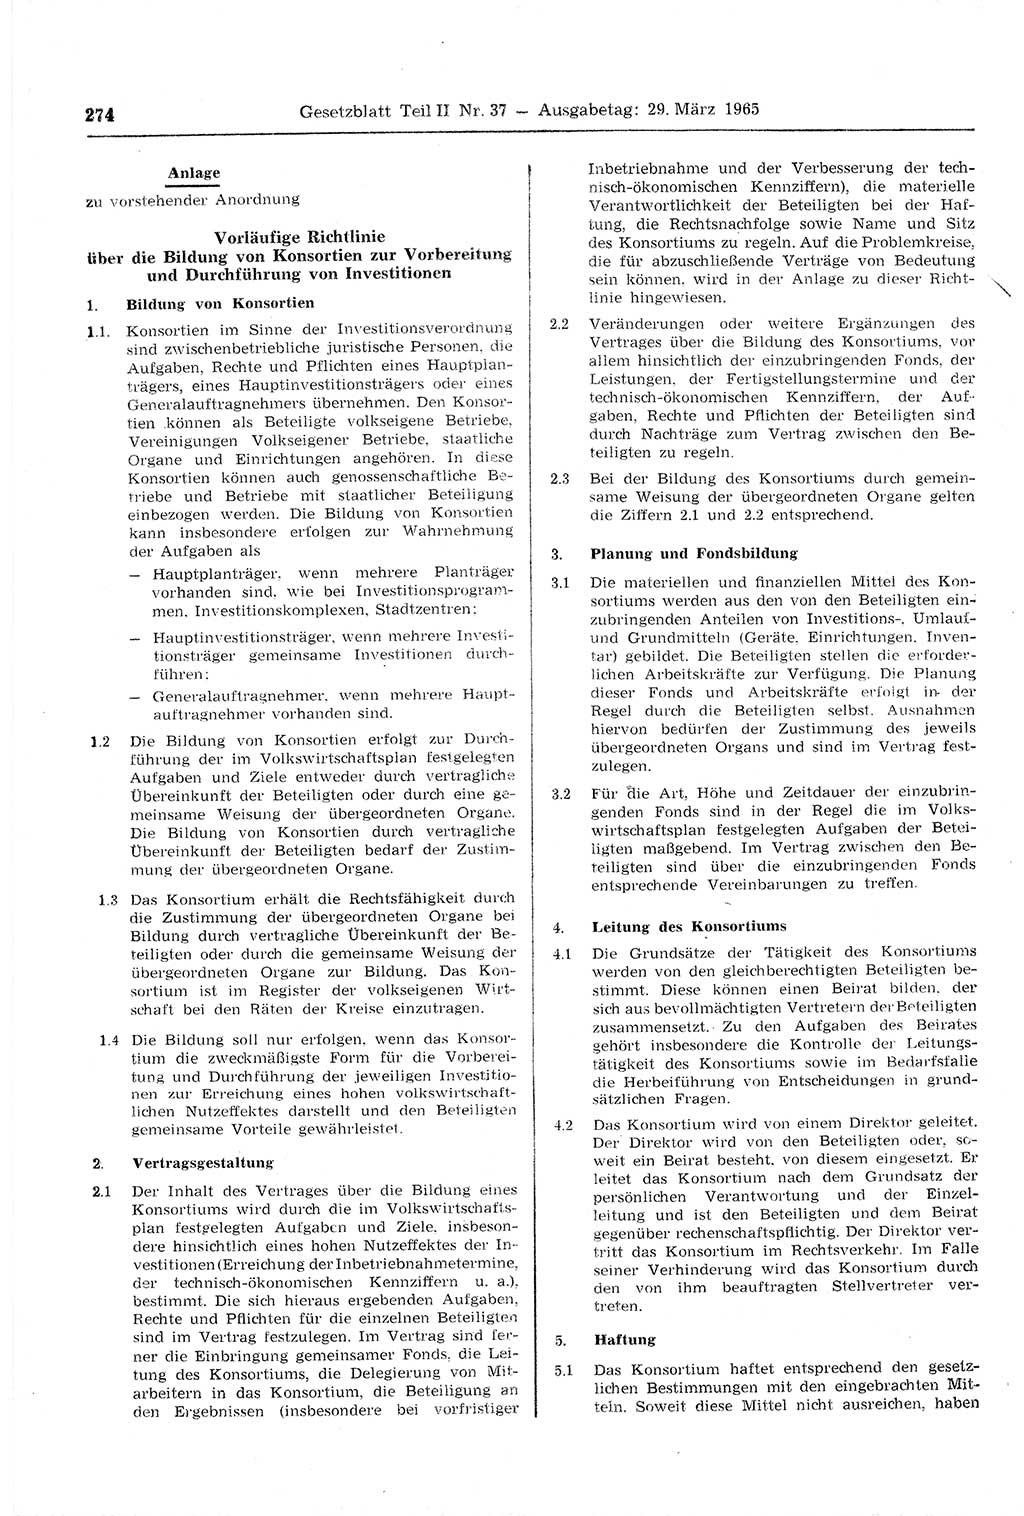 Gesetzblatt (GBl.) der Deutschen Demokratischen Republik (DDR) Teil ⅠⅠ 1965, Seite 274 (GBl. DDR ⅠⅠ 1965, S. 274)